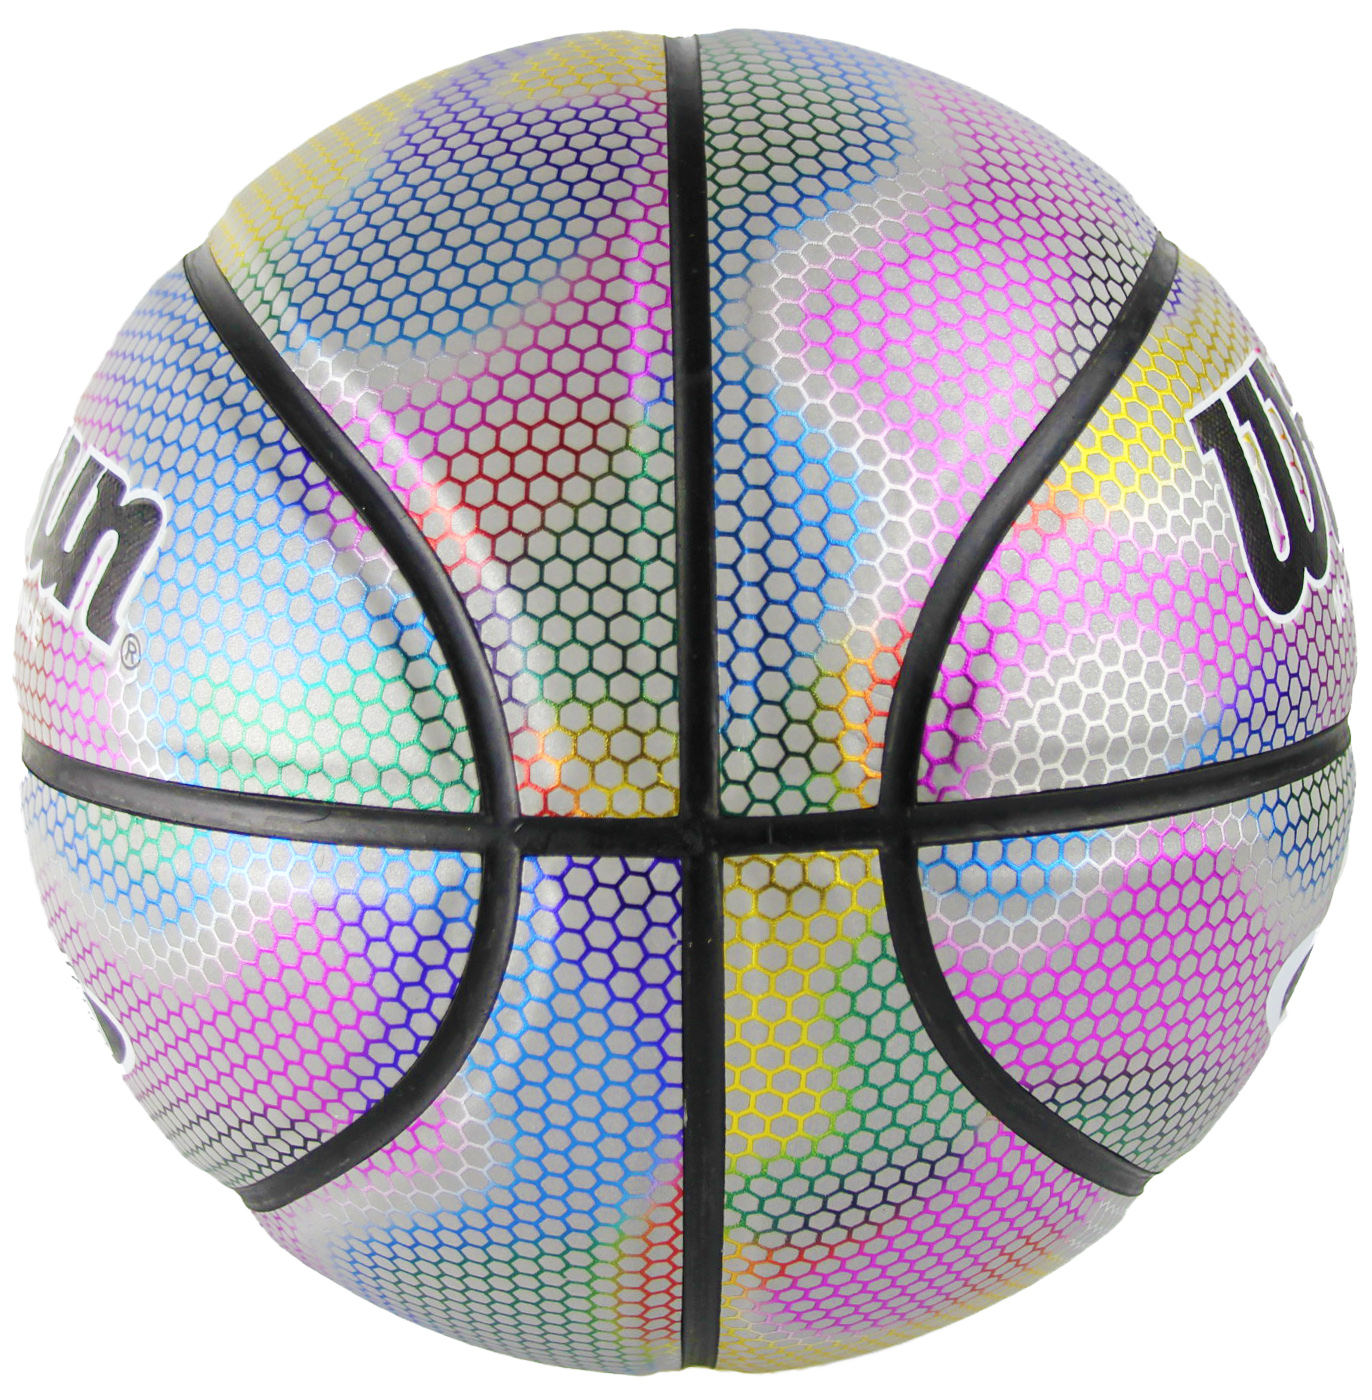 Баскетбольный мяч Wildsun, светоотражающий-голографический, размер 7, 44463 / Микс